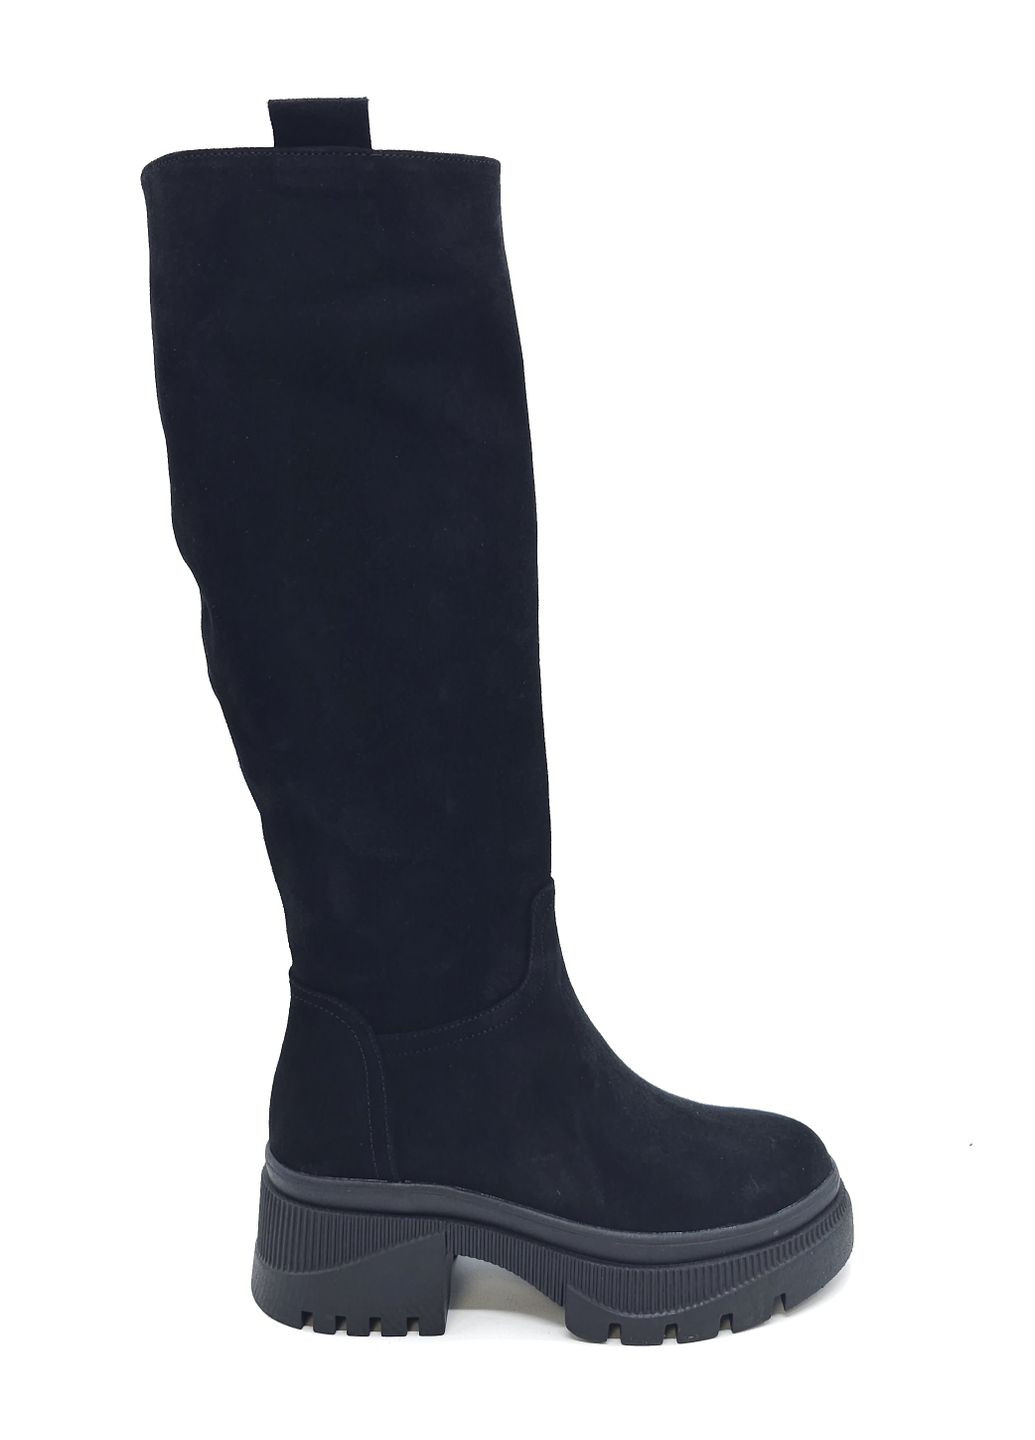 Жіночі чоботи єврозима чорні замшеві MR-19-3 23,5 см (р) Morento (271828051)